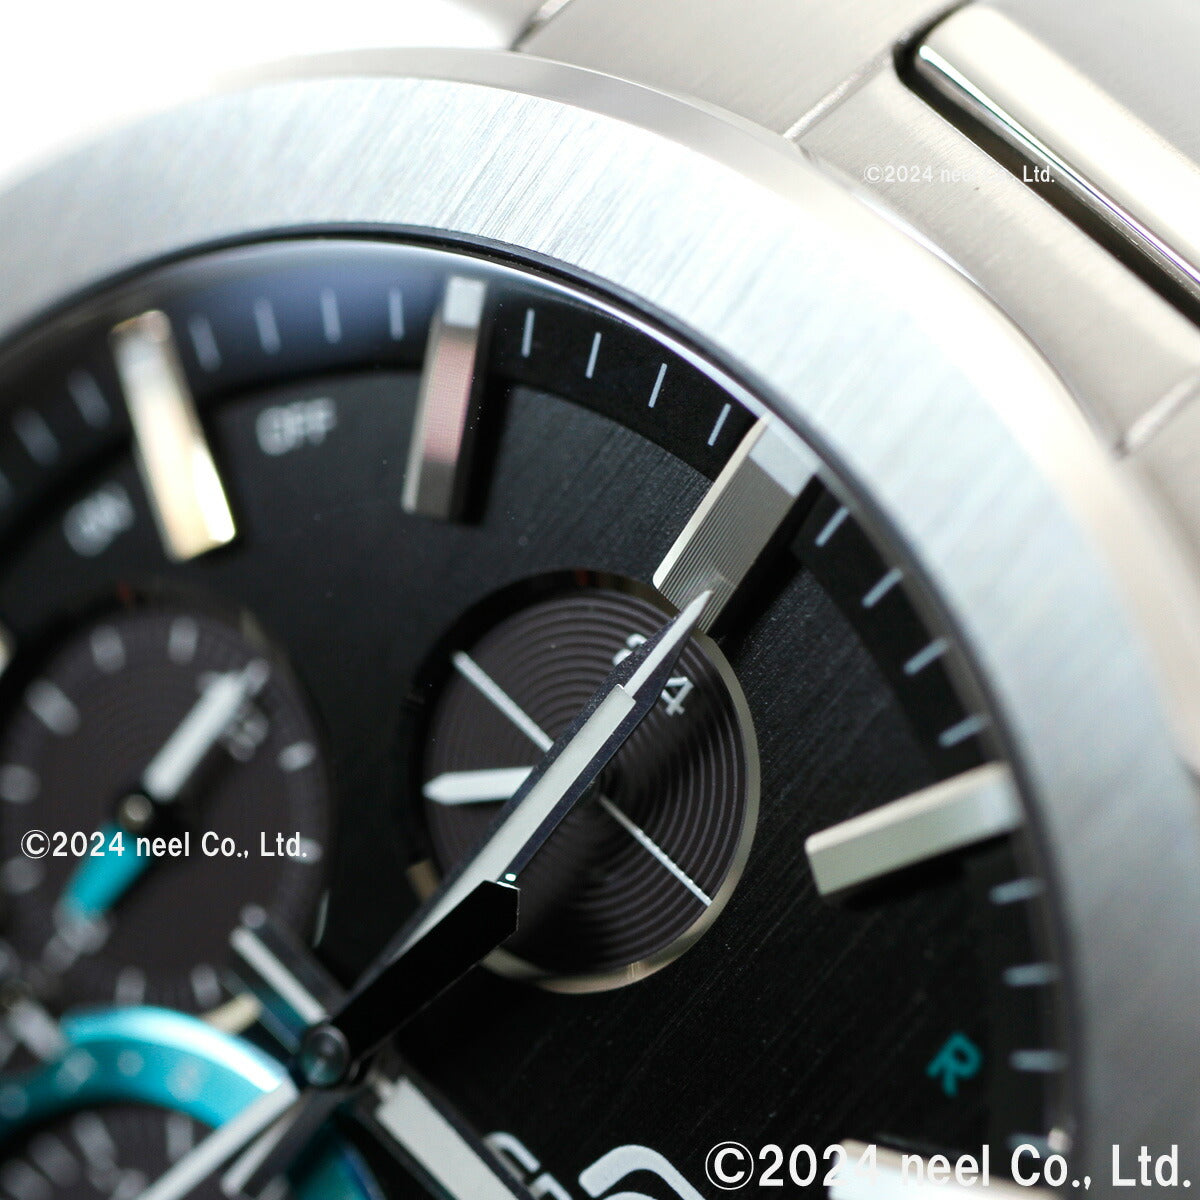 カシオ エディフィス CASIO EDIFICE 電波 ソーラー 電波時計 腕時計 メンズ タフソーラー クロノグラフ Slim Line EQB-1000YD-1AJF